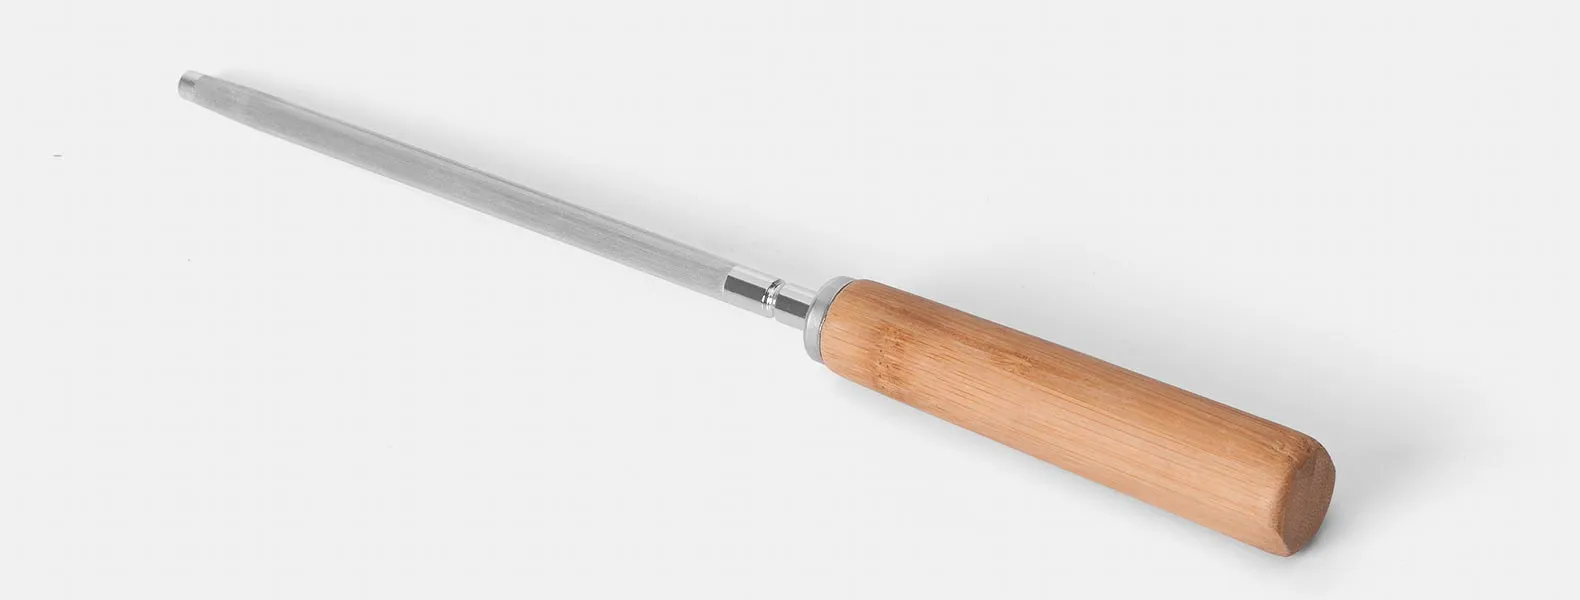 Kit para Churrasco em Bambu/Aço Inox; Acompanha tábua em Bambu com sulco, faca 8'', faca 5 para desossar, garfo e chaira em Bambu/Inox. Tábua confeccionada com tripla camada invertida para dar maior durabilidade. Como cortesia, na faca 8 fazemos uma gravação com os cortes do boi.